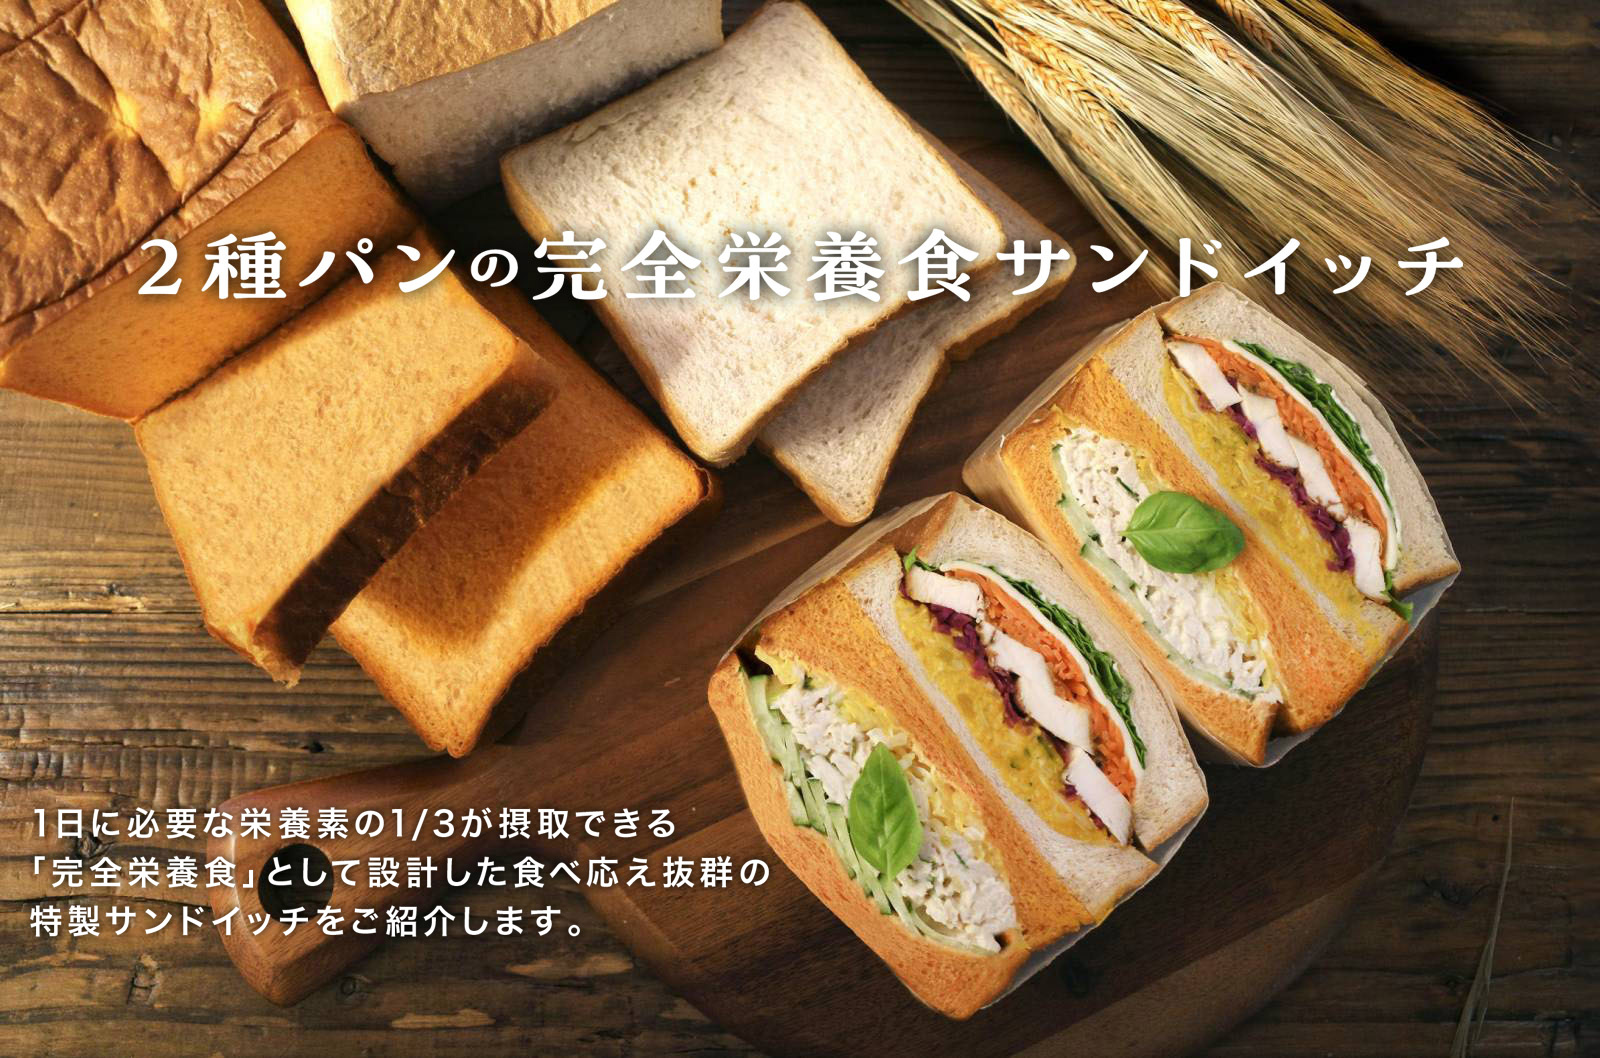 2種パンの完全栄養食サンドイッチ　1日に必要な栄養素の1/3が摂取できる「完全栄養食」として設計した食べ応え抜群の特製サンドイッチをご紹介します。